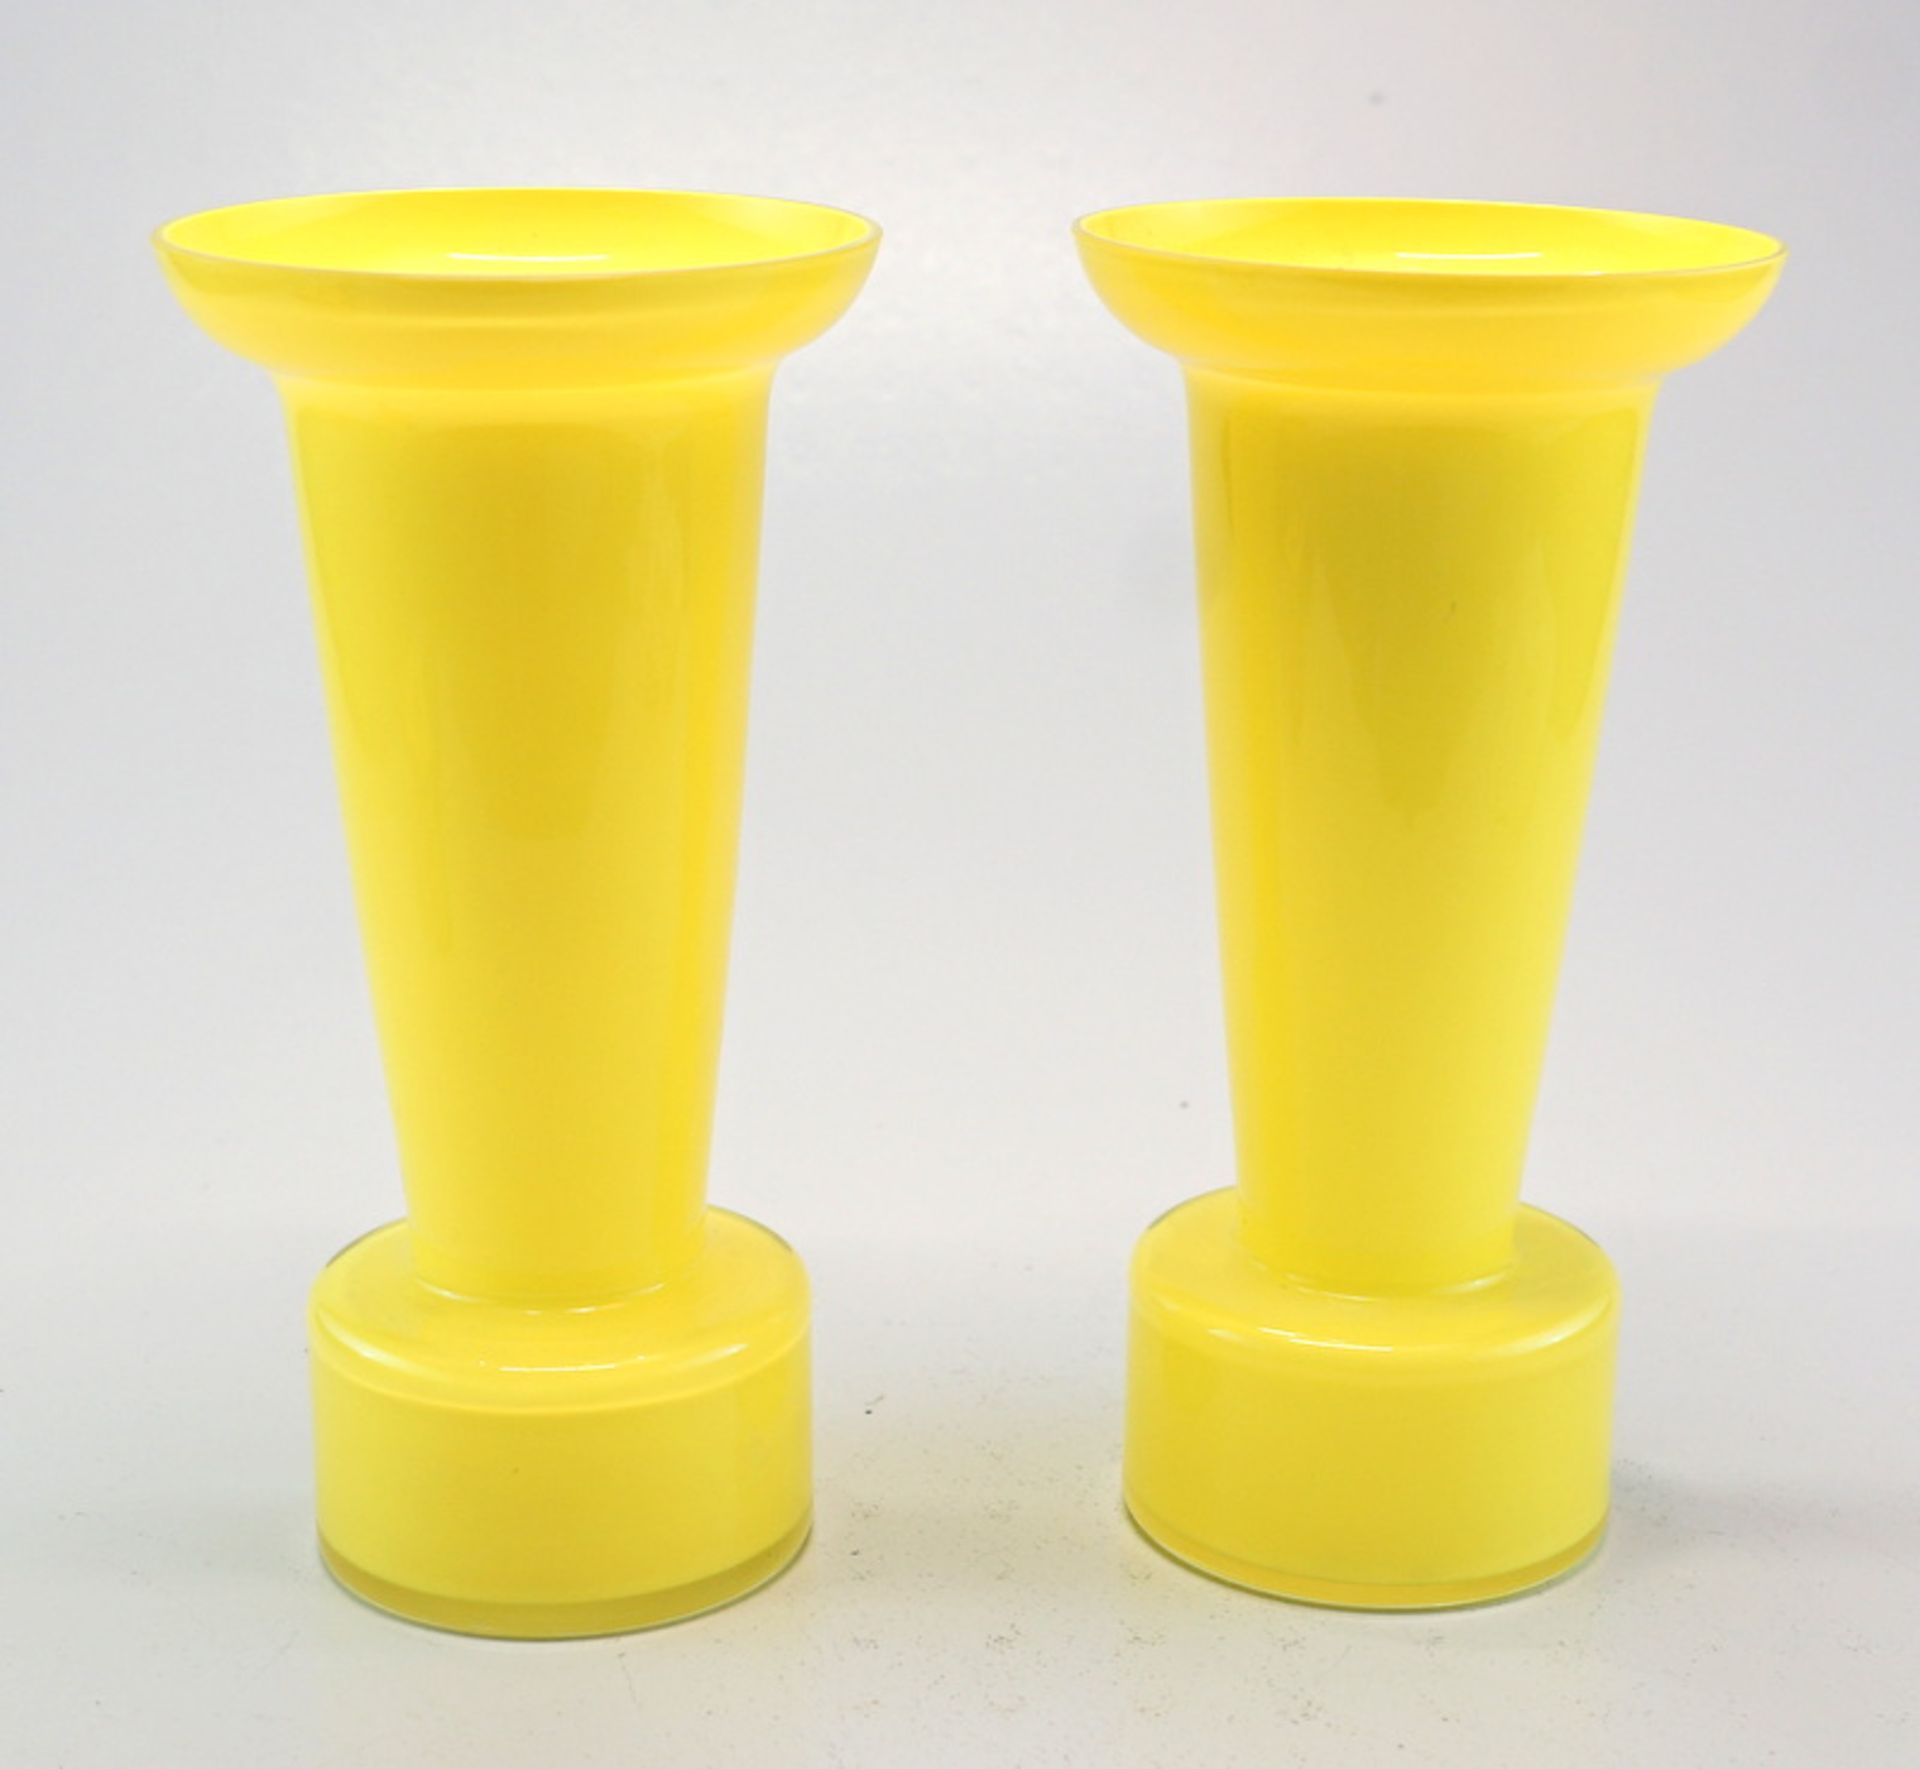 Ritzenhoff Sieger Design: Pärchen gelbe Vasen